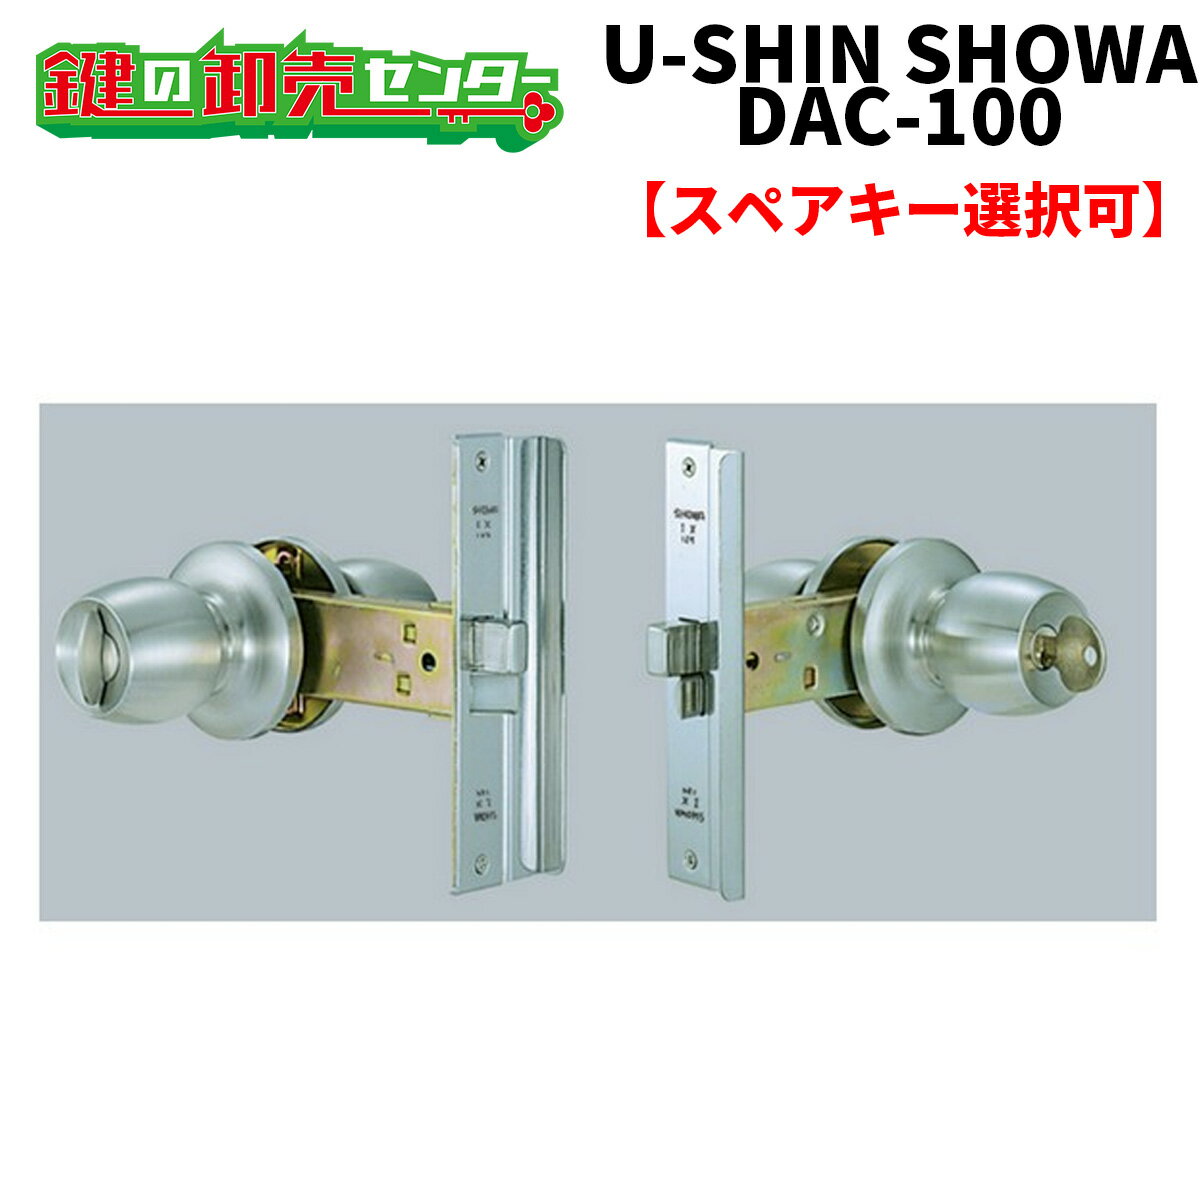 【オプション選択可能商品】 ユーシンショウワ,U-shin Showa DAC（ダック）100 玉座セット SHOWA DAC 100 取替玉座《…